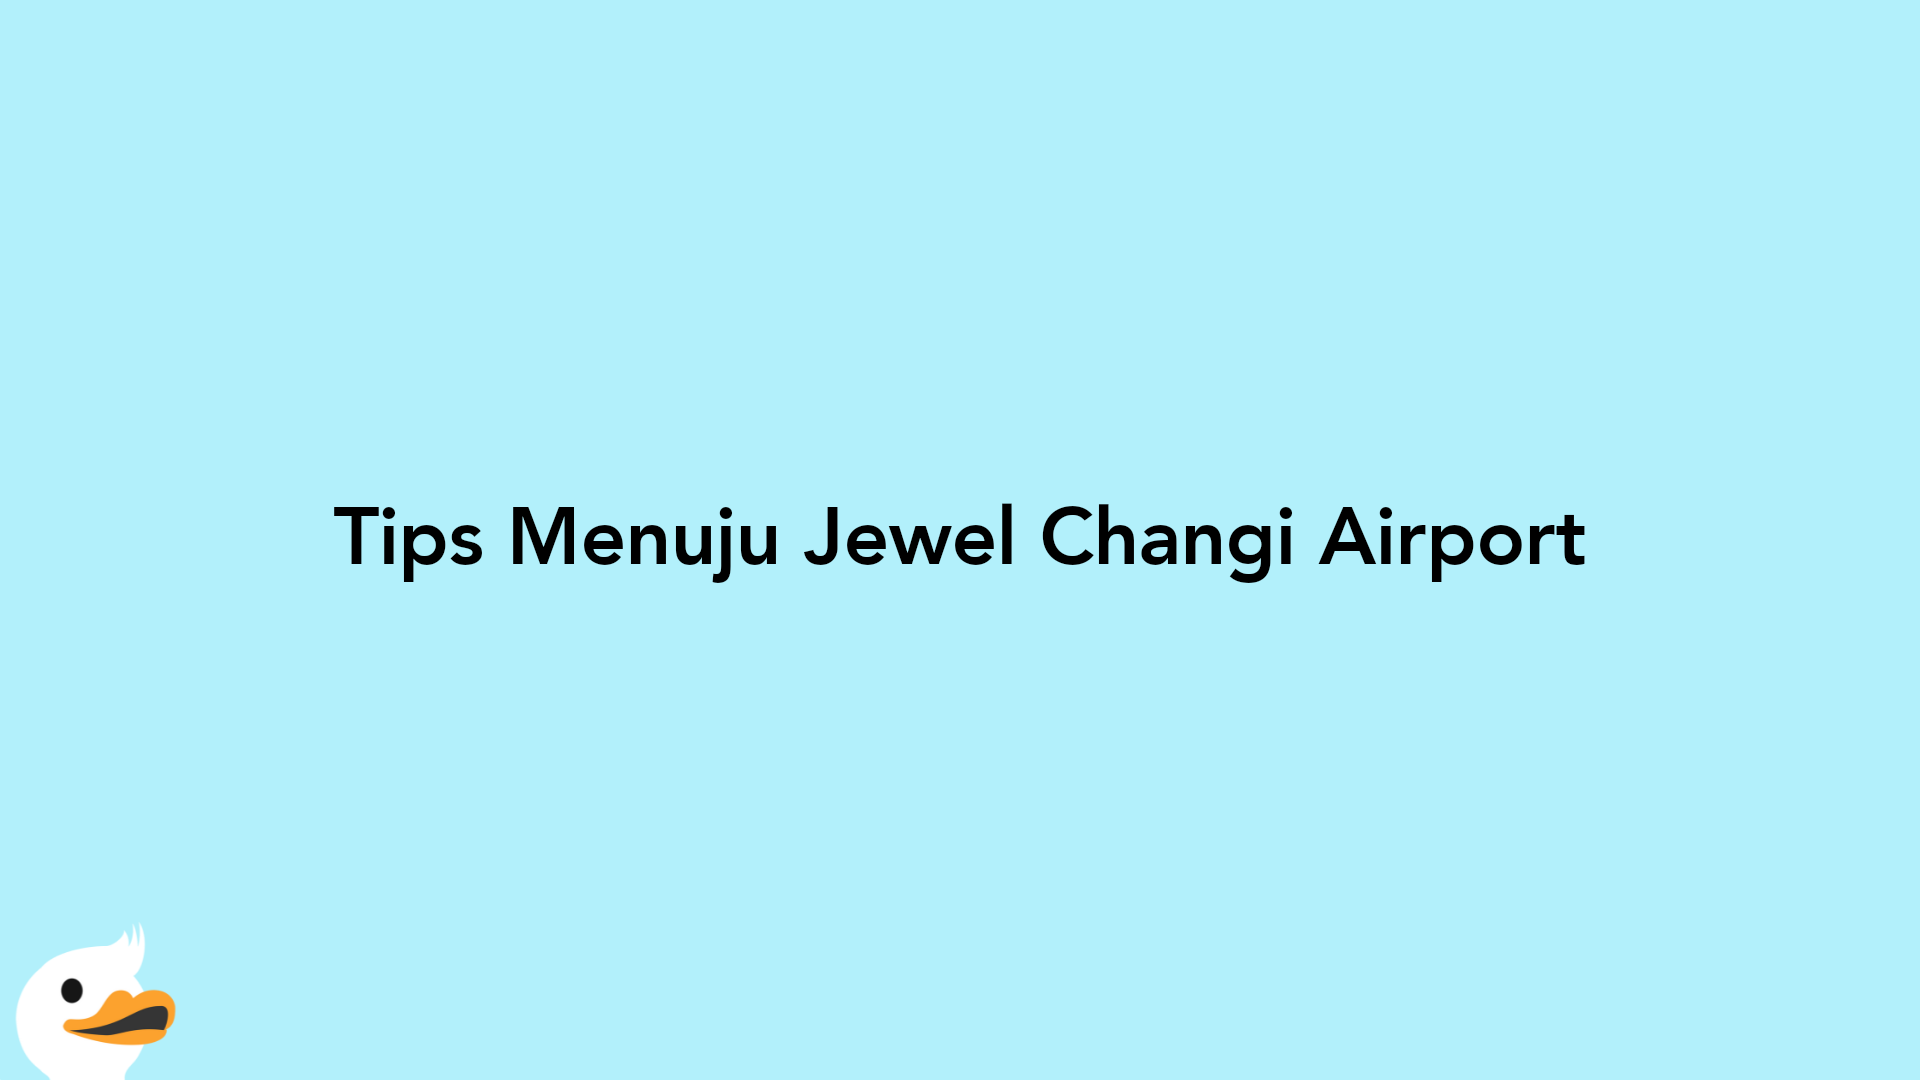 Tips Menuju Jewel Changi Airport